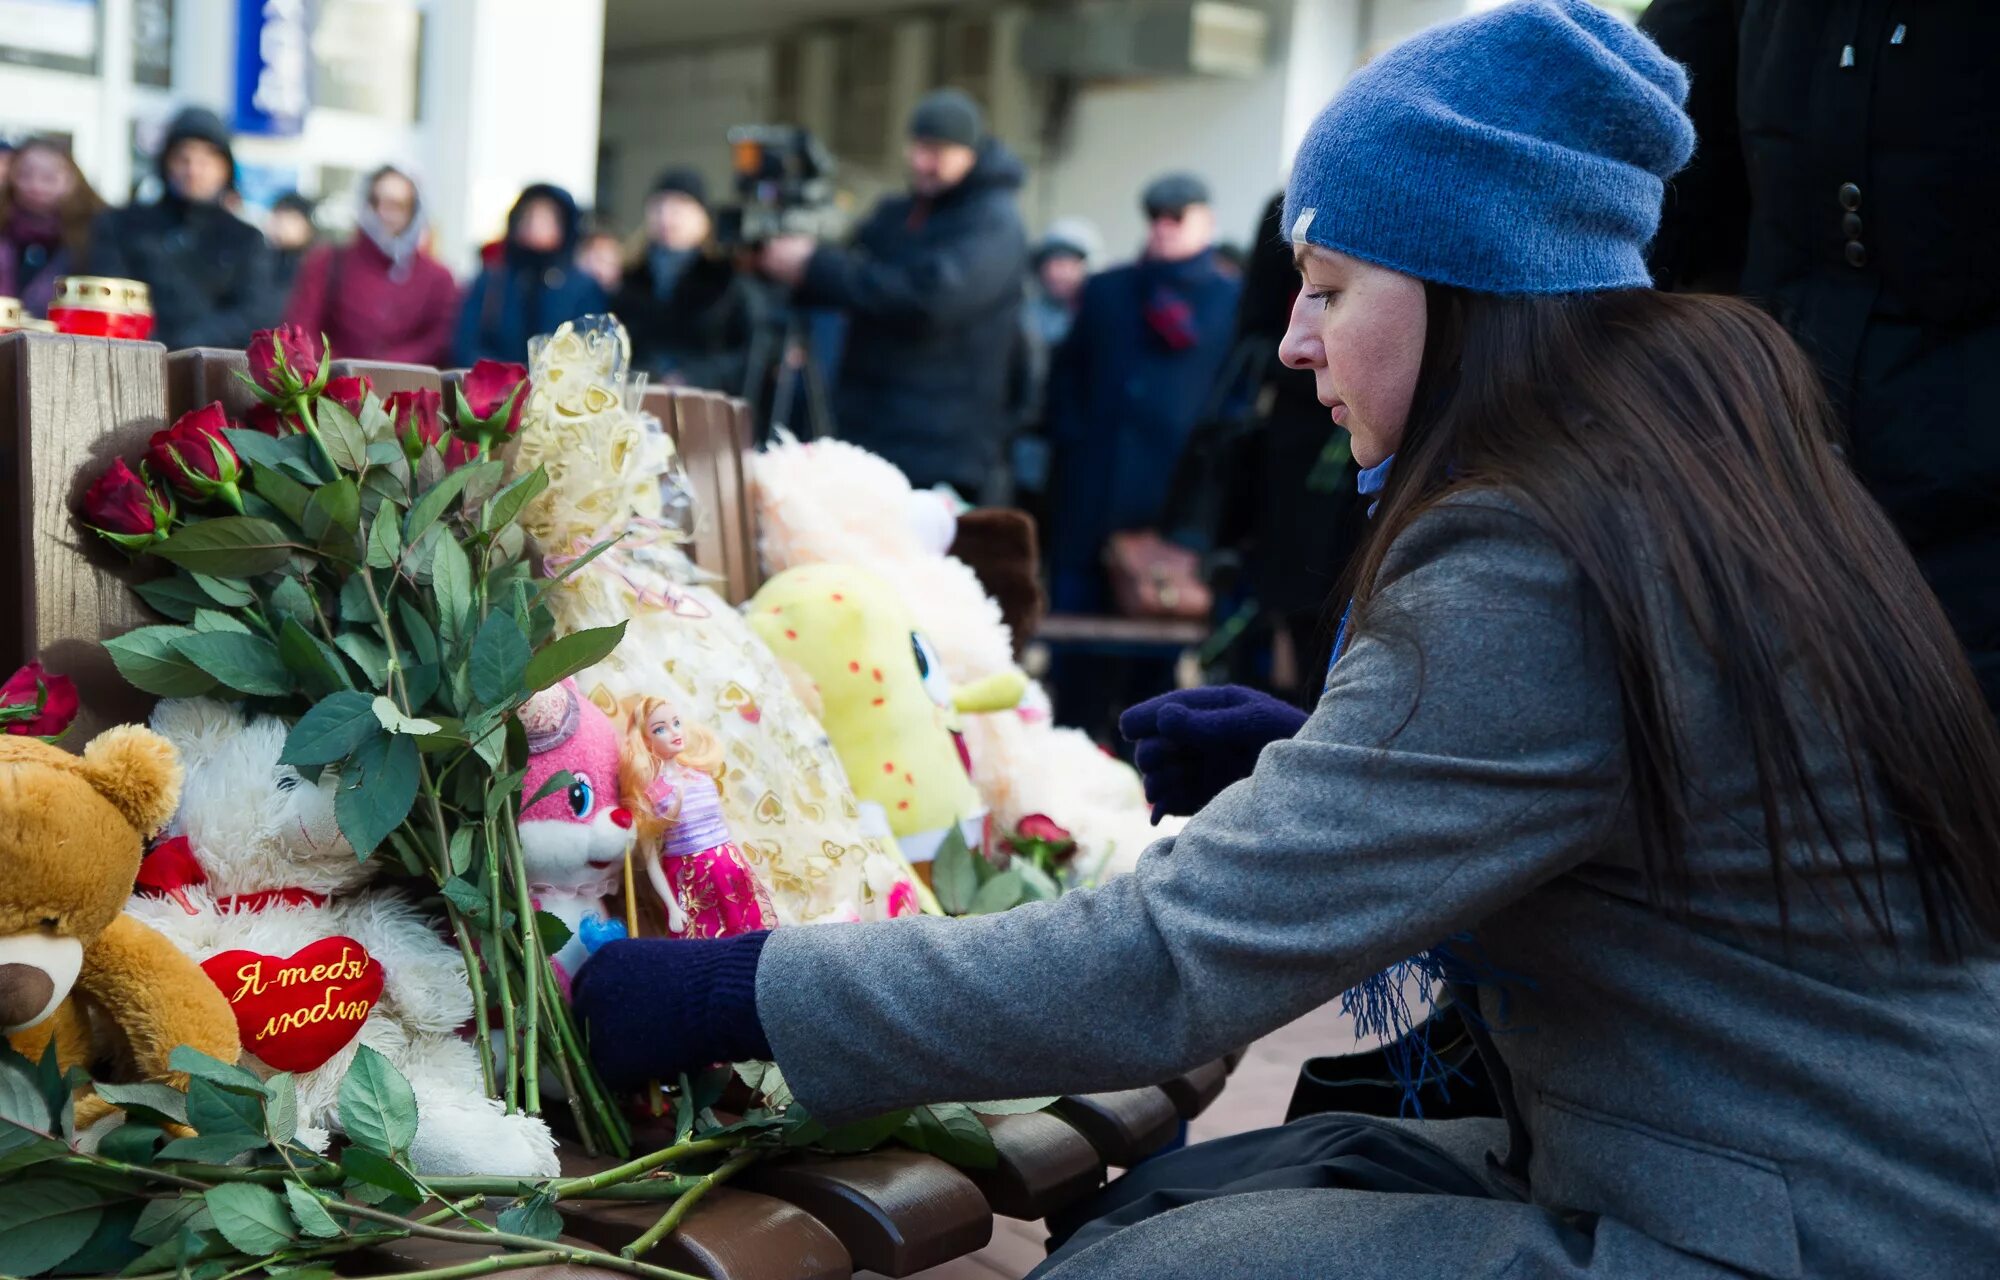 Скорбим Тверь. Похороны молодых девушек в России. Фото цветов в руке на улице зимой похороны. Прощание молодых